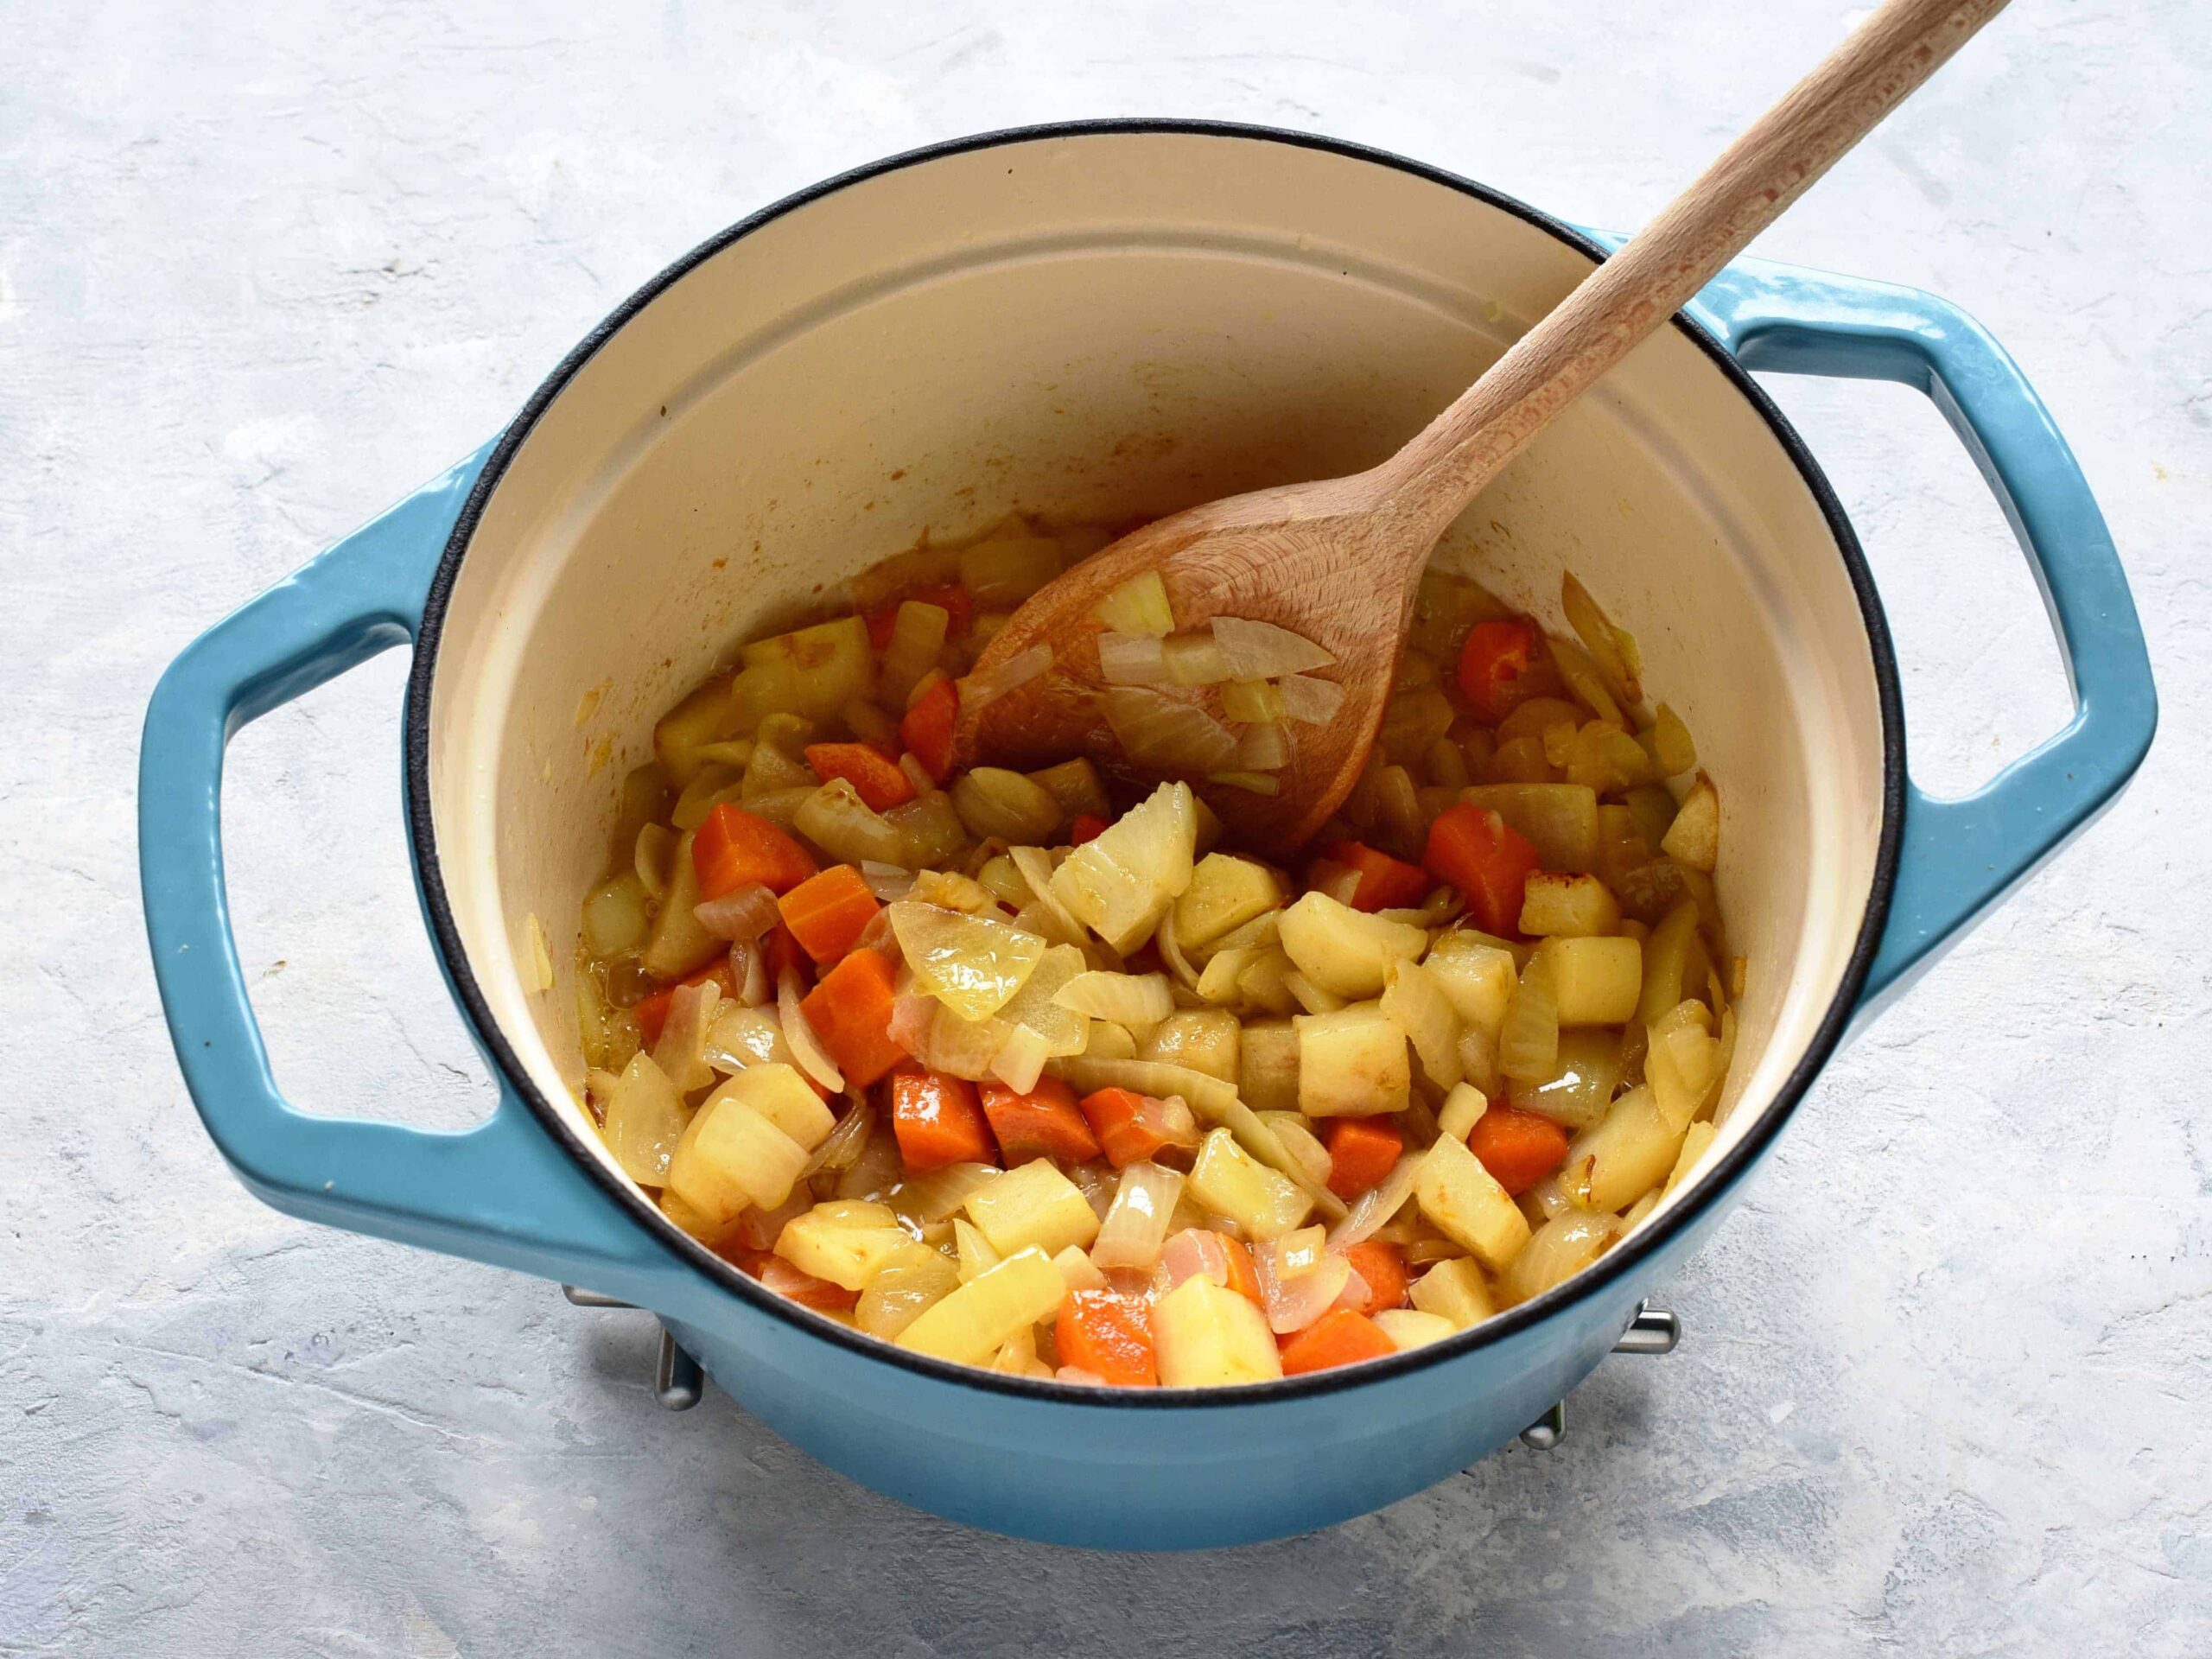 czech bramboracka preparing in a pot